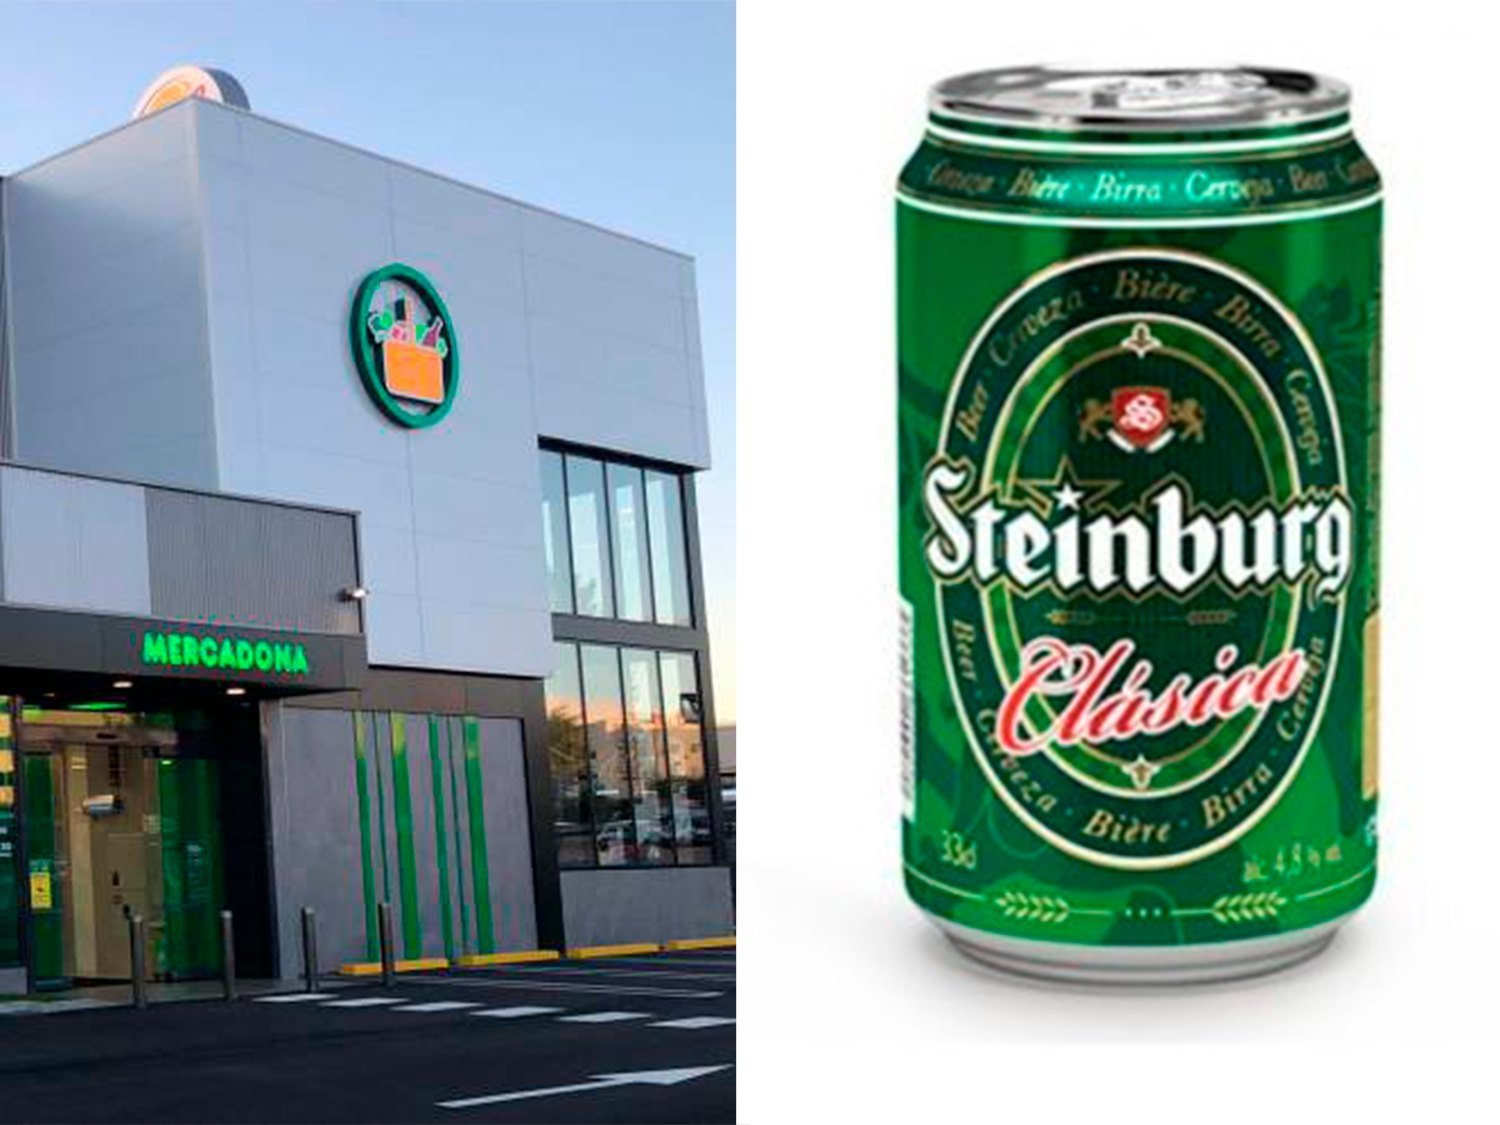 Quién está detrás y cuál es la desconocida historia de Steinburg, la cerveza de Mercadona